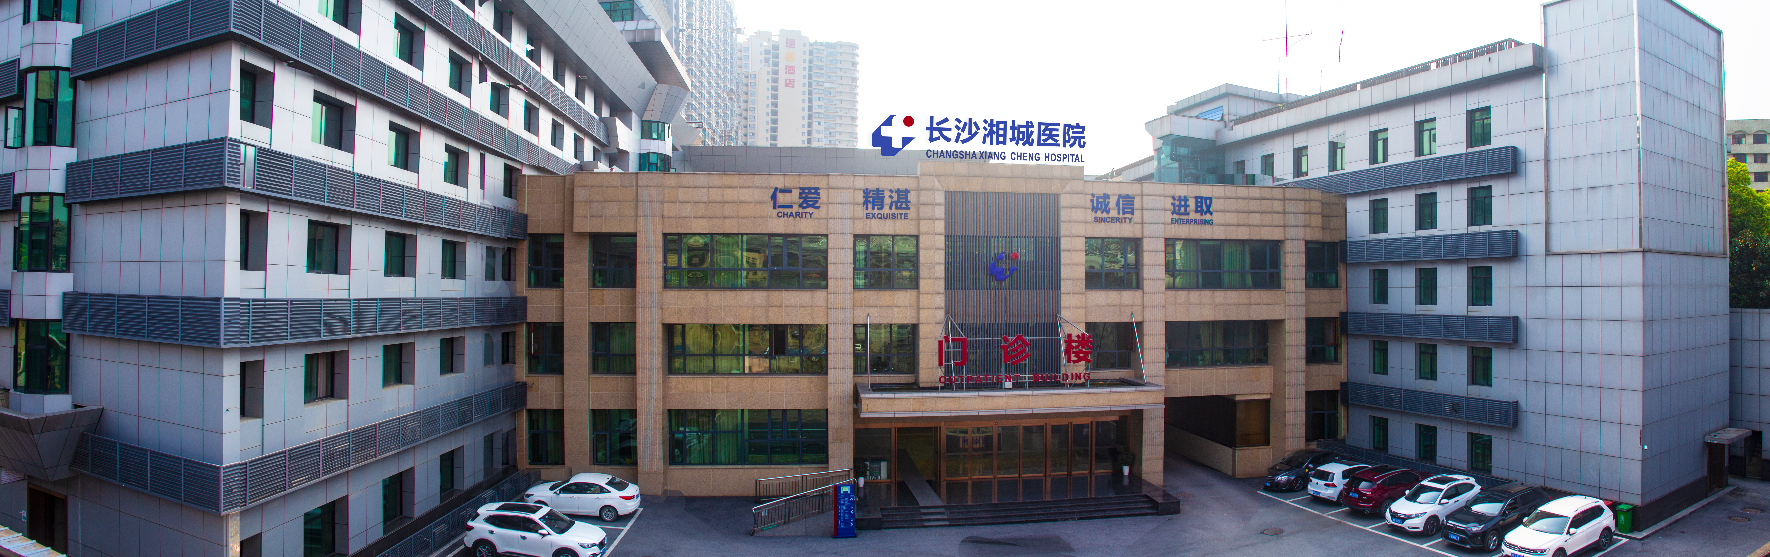 長沙湘城醫院